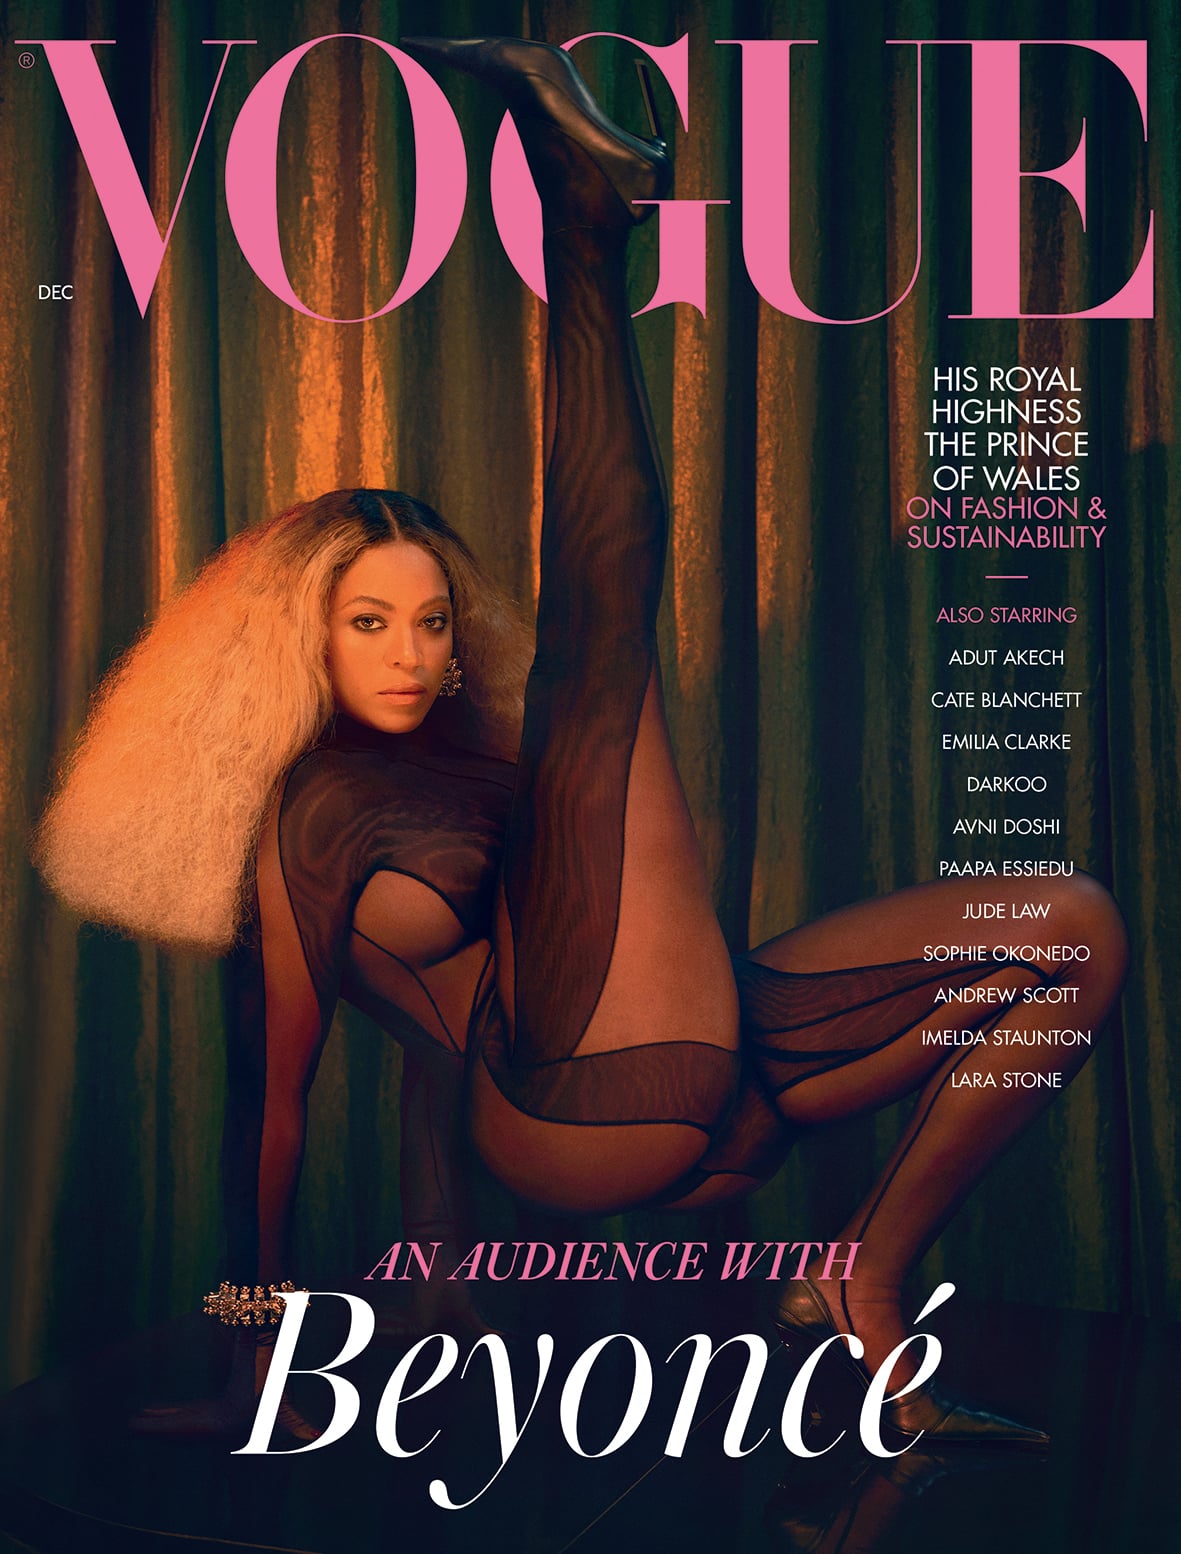 Beyoncé xuất hiện trong ấn phẩm tháng 12 của British Vogue. Tấm ảnh được chụp bởi nhiếp ảnh gia Kennedi Carter (21 tuổi), nhiếp ảnh gia trẻ tuổi nhất của Vogue